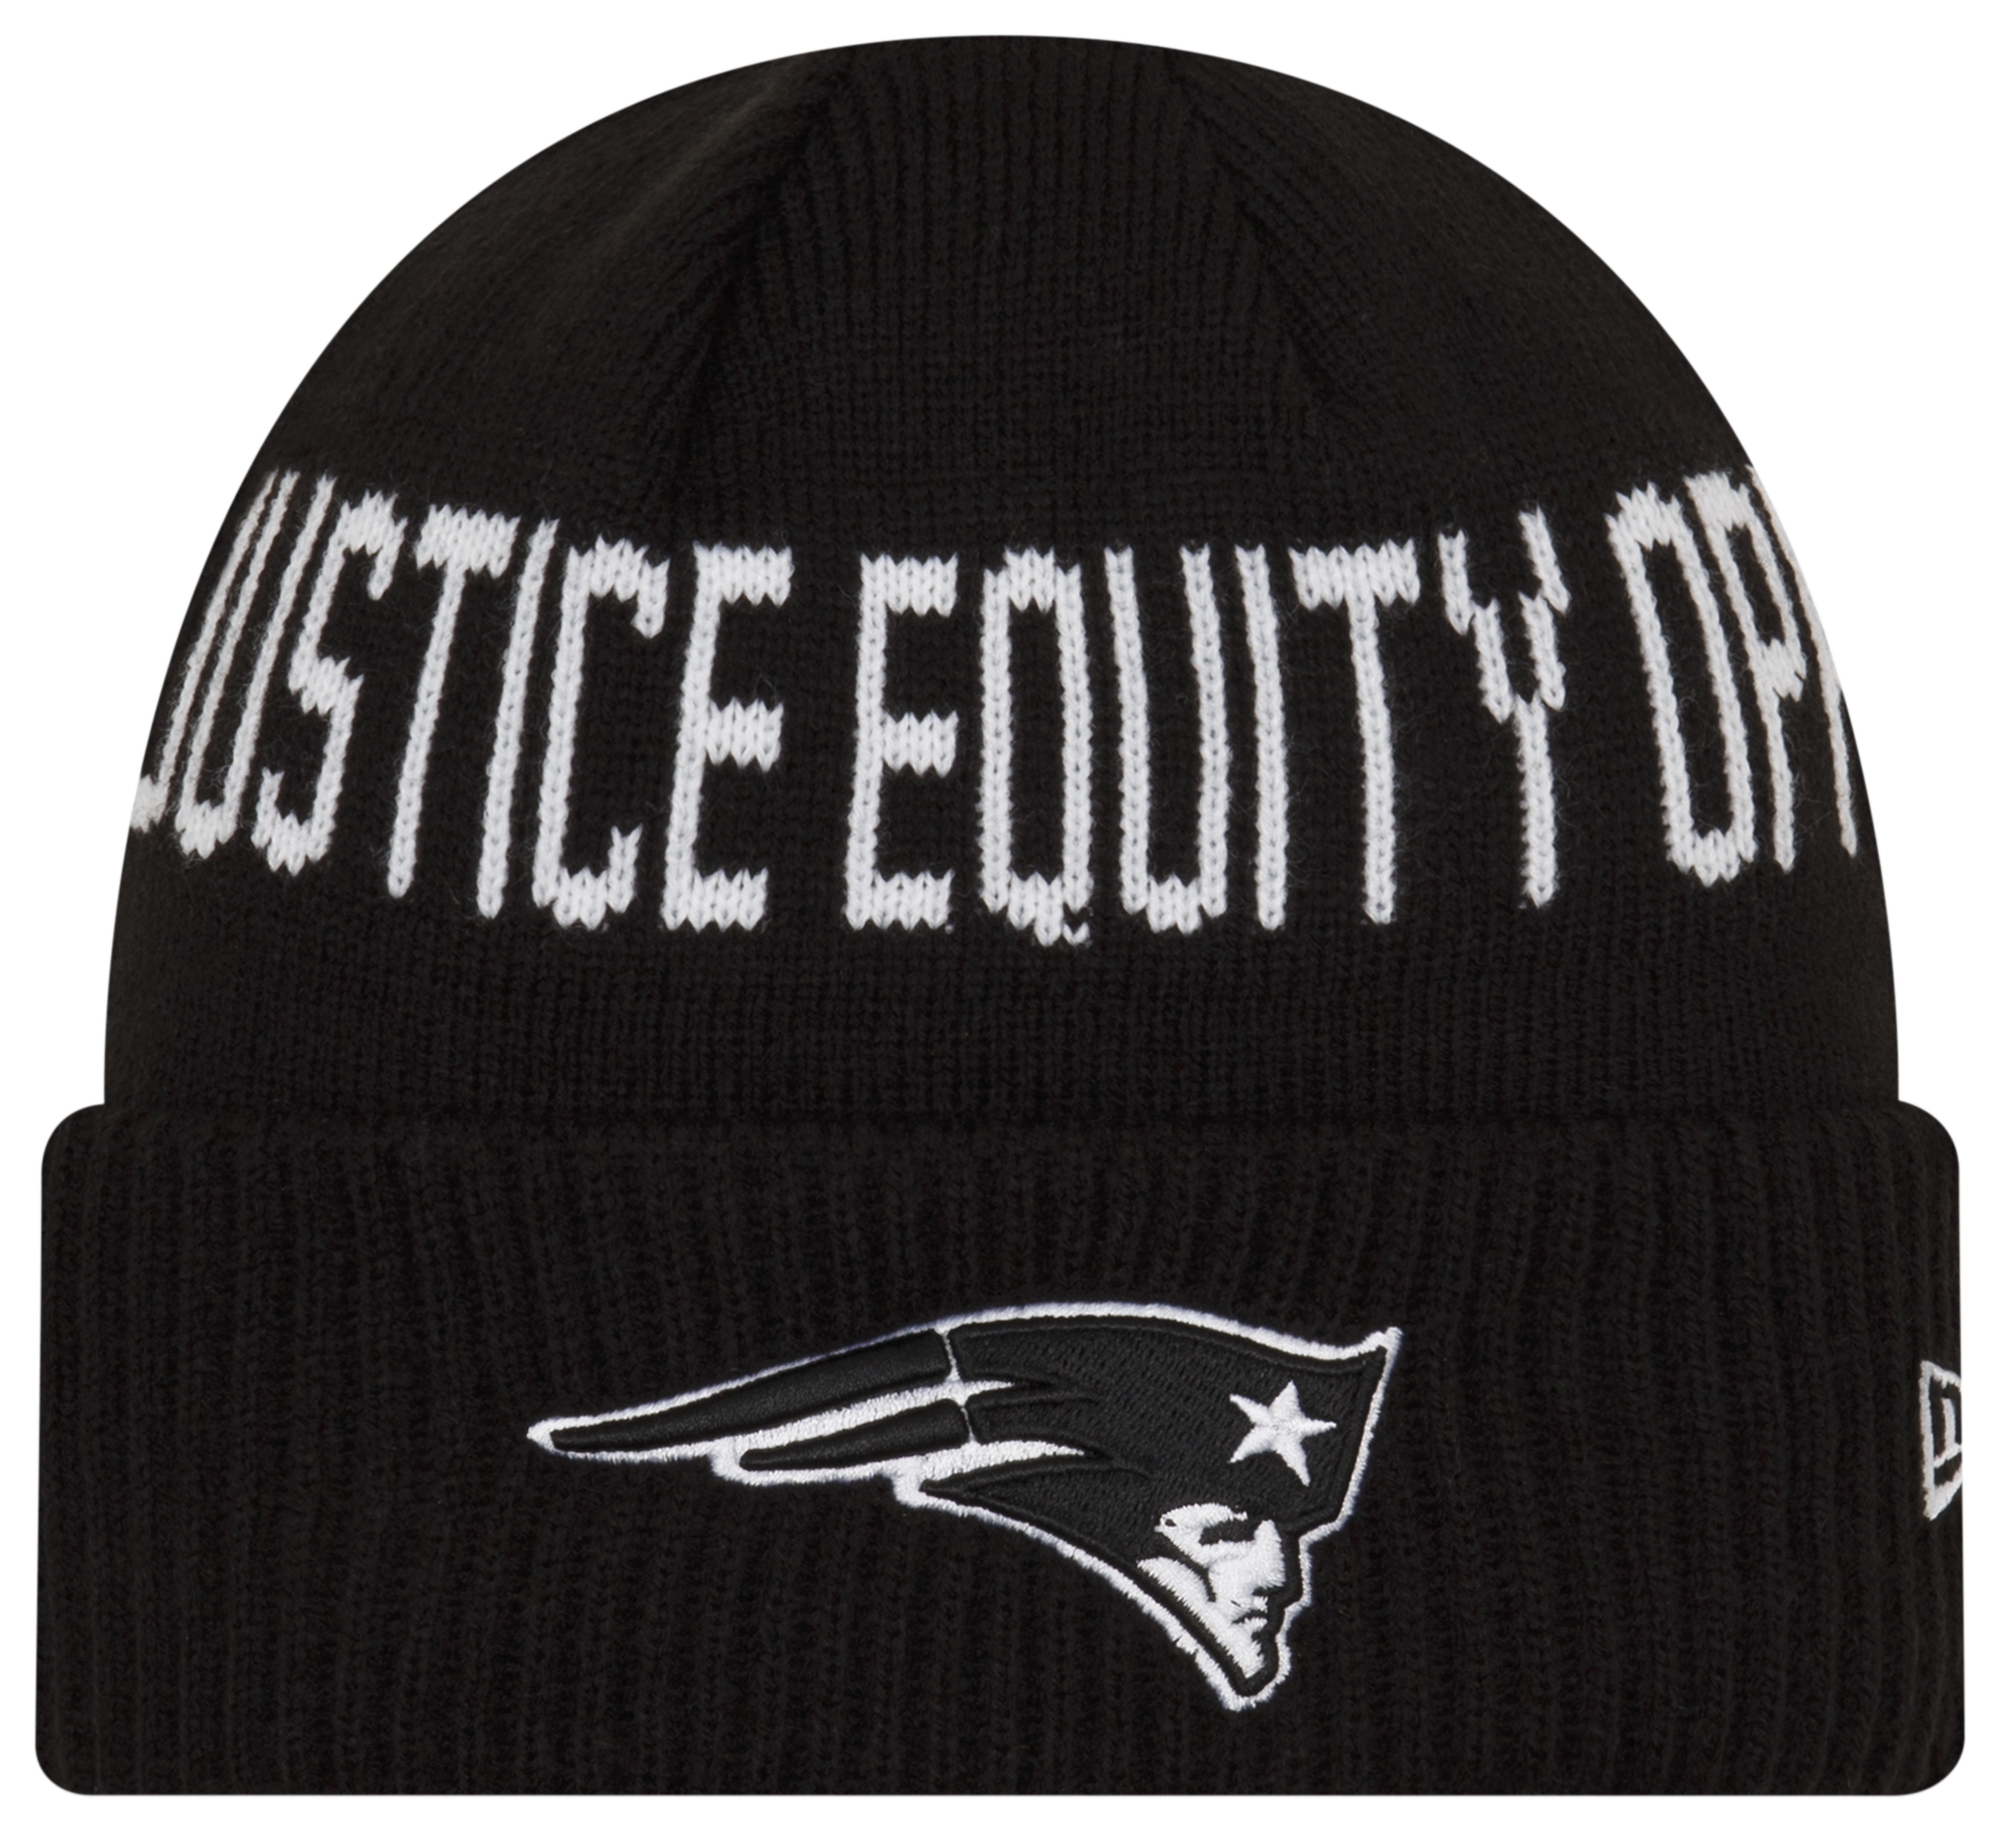 New Era Patriots Social Justice Knit Cap